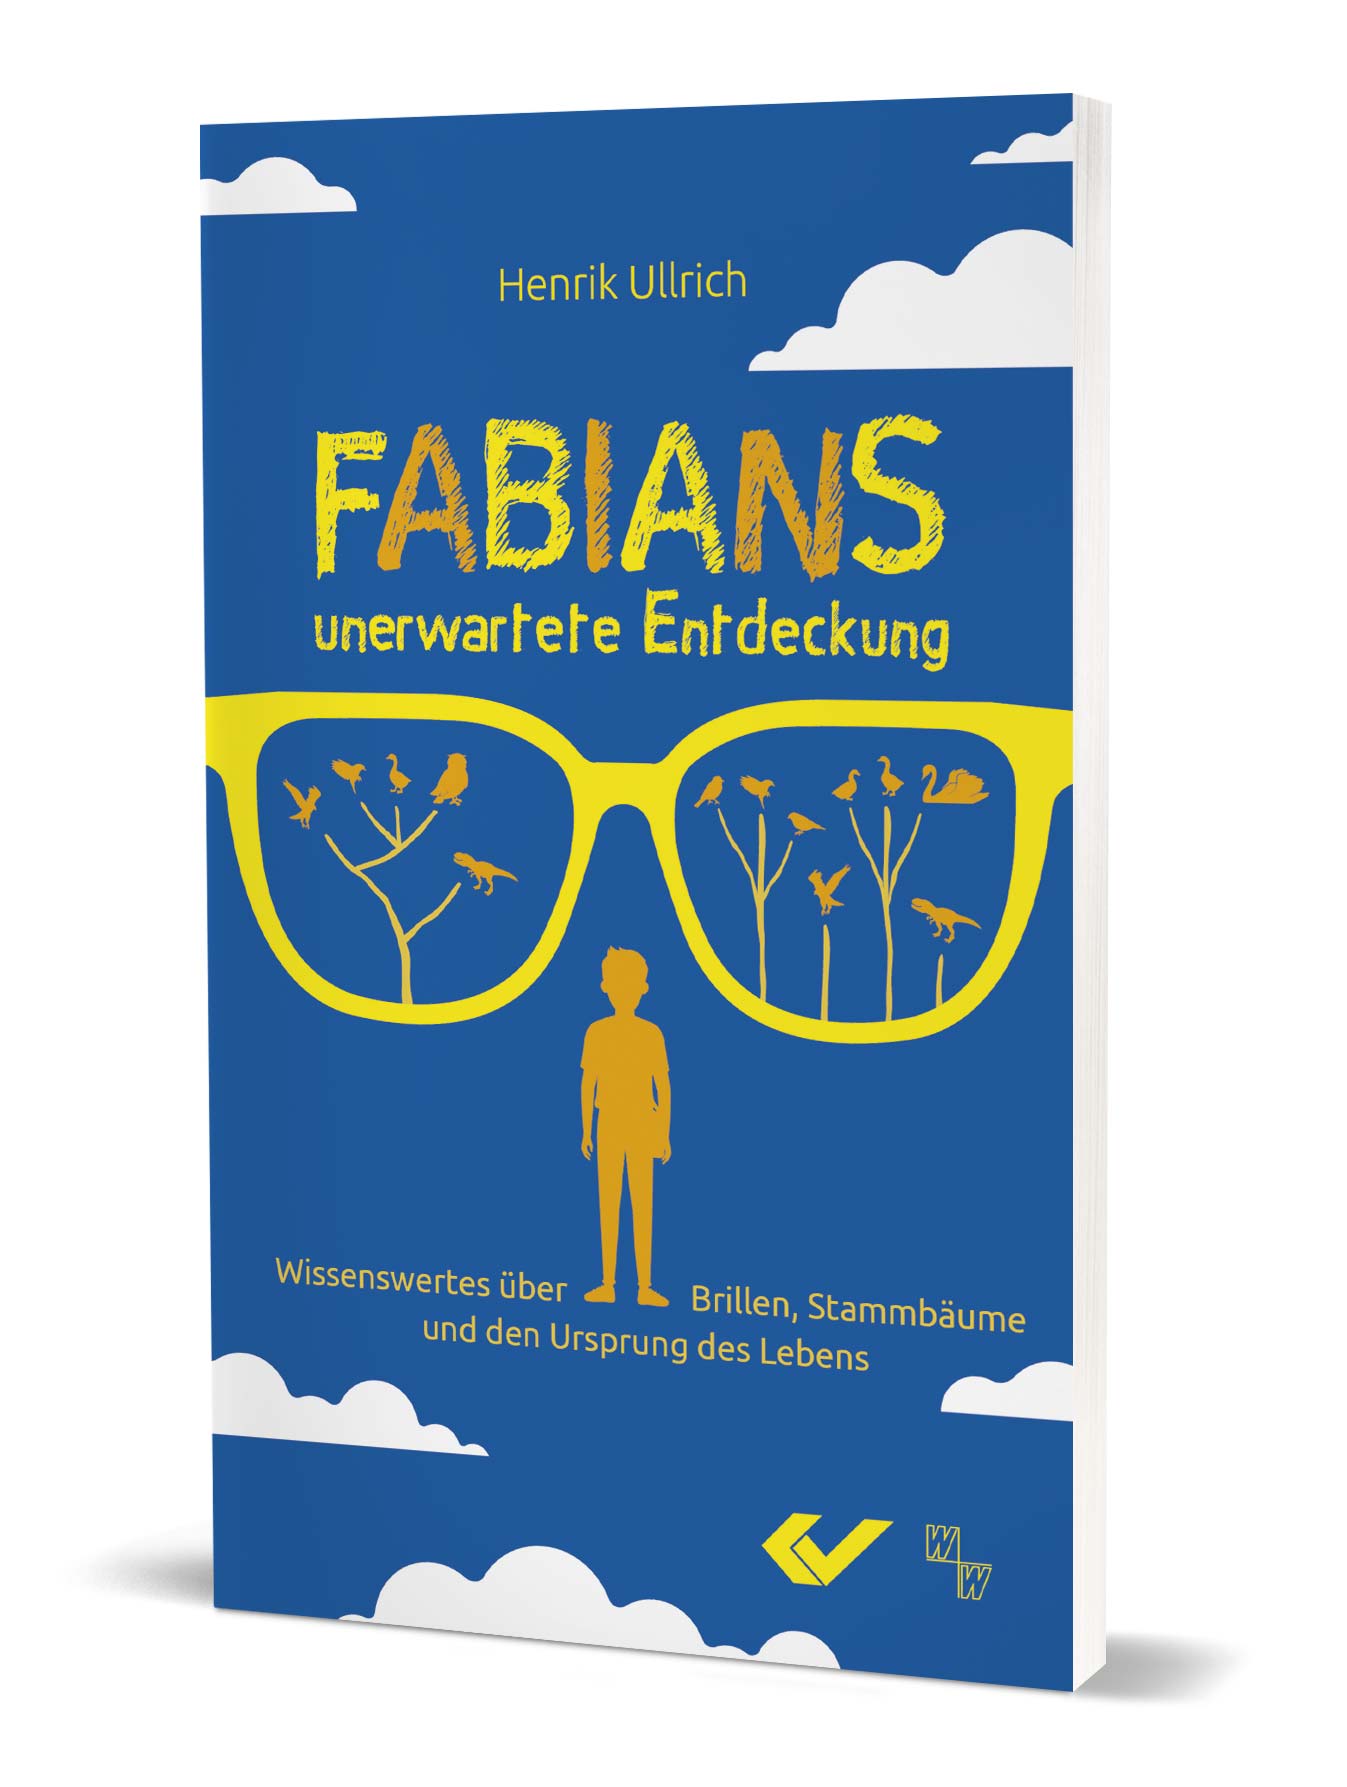 Henrik Ullrich: Fabians unerwartete Entdeckung - Wissenswertes über Brillen, Stammbäume und den Ursprung des Lebens